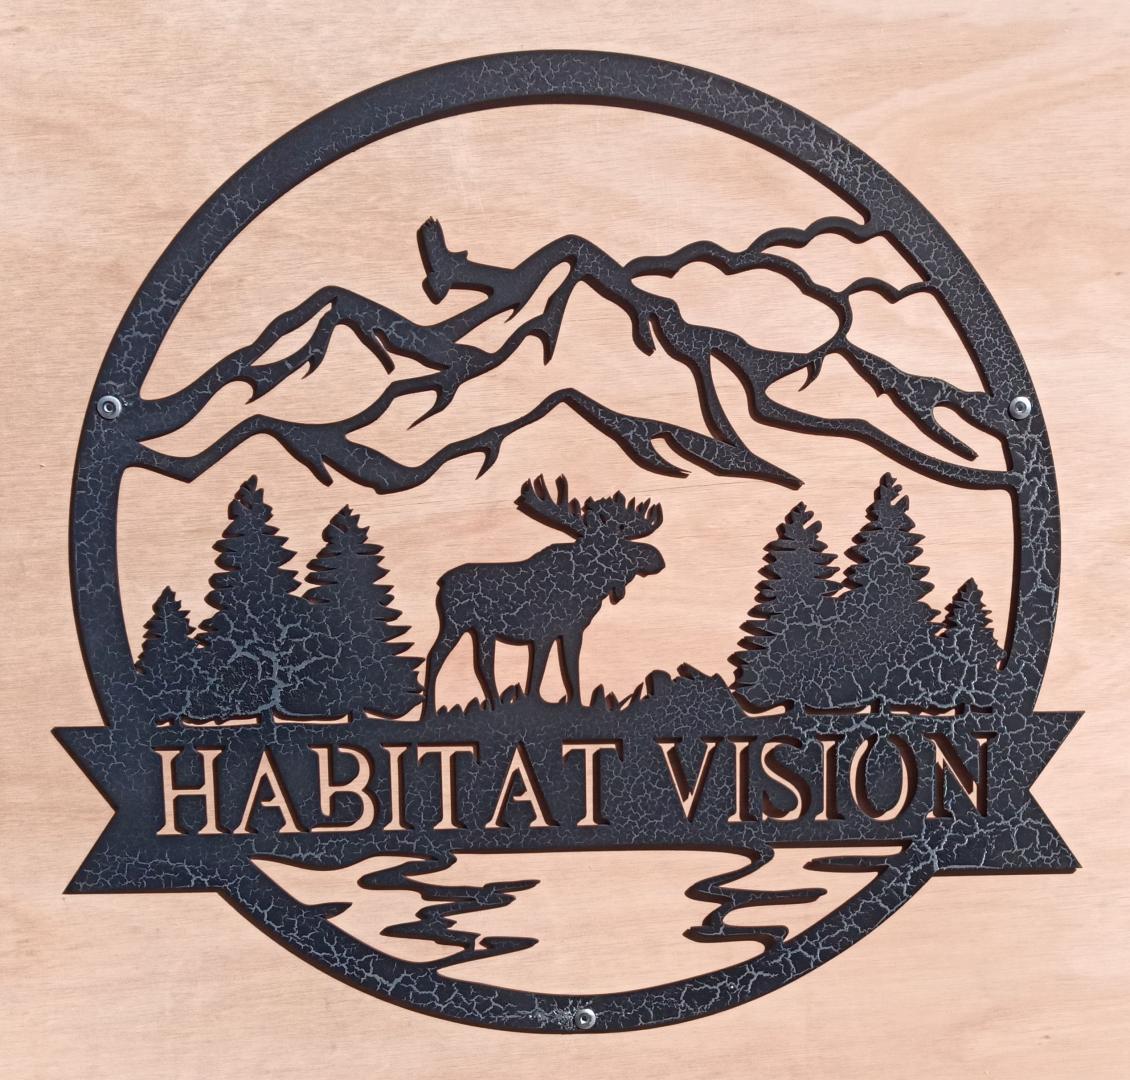 Habitat Vision